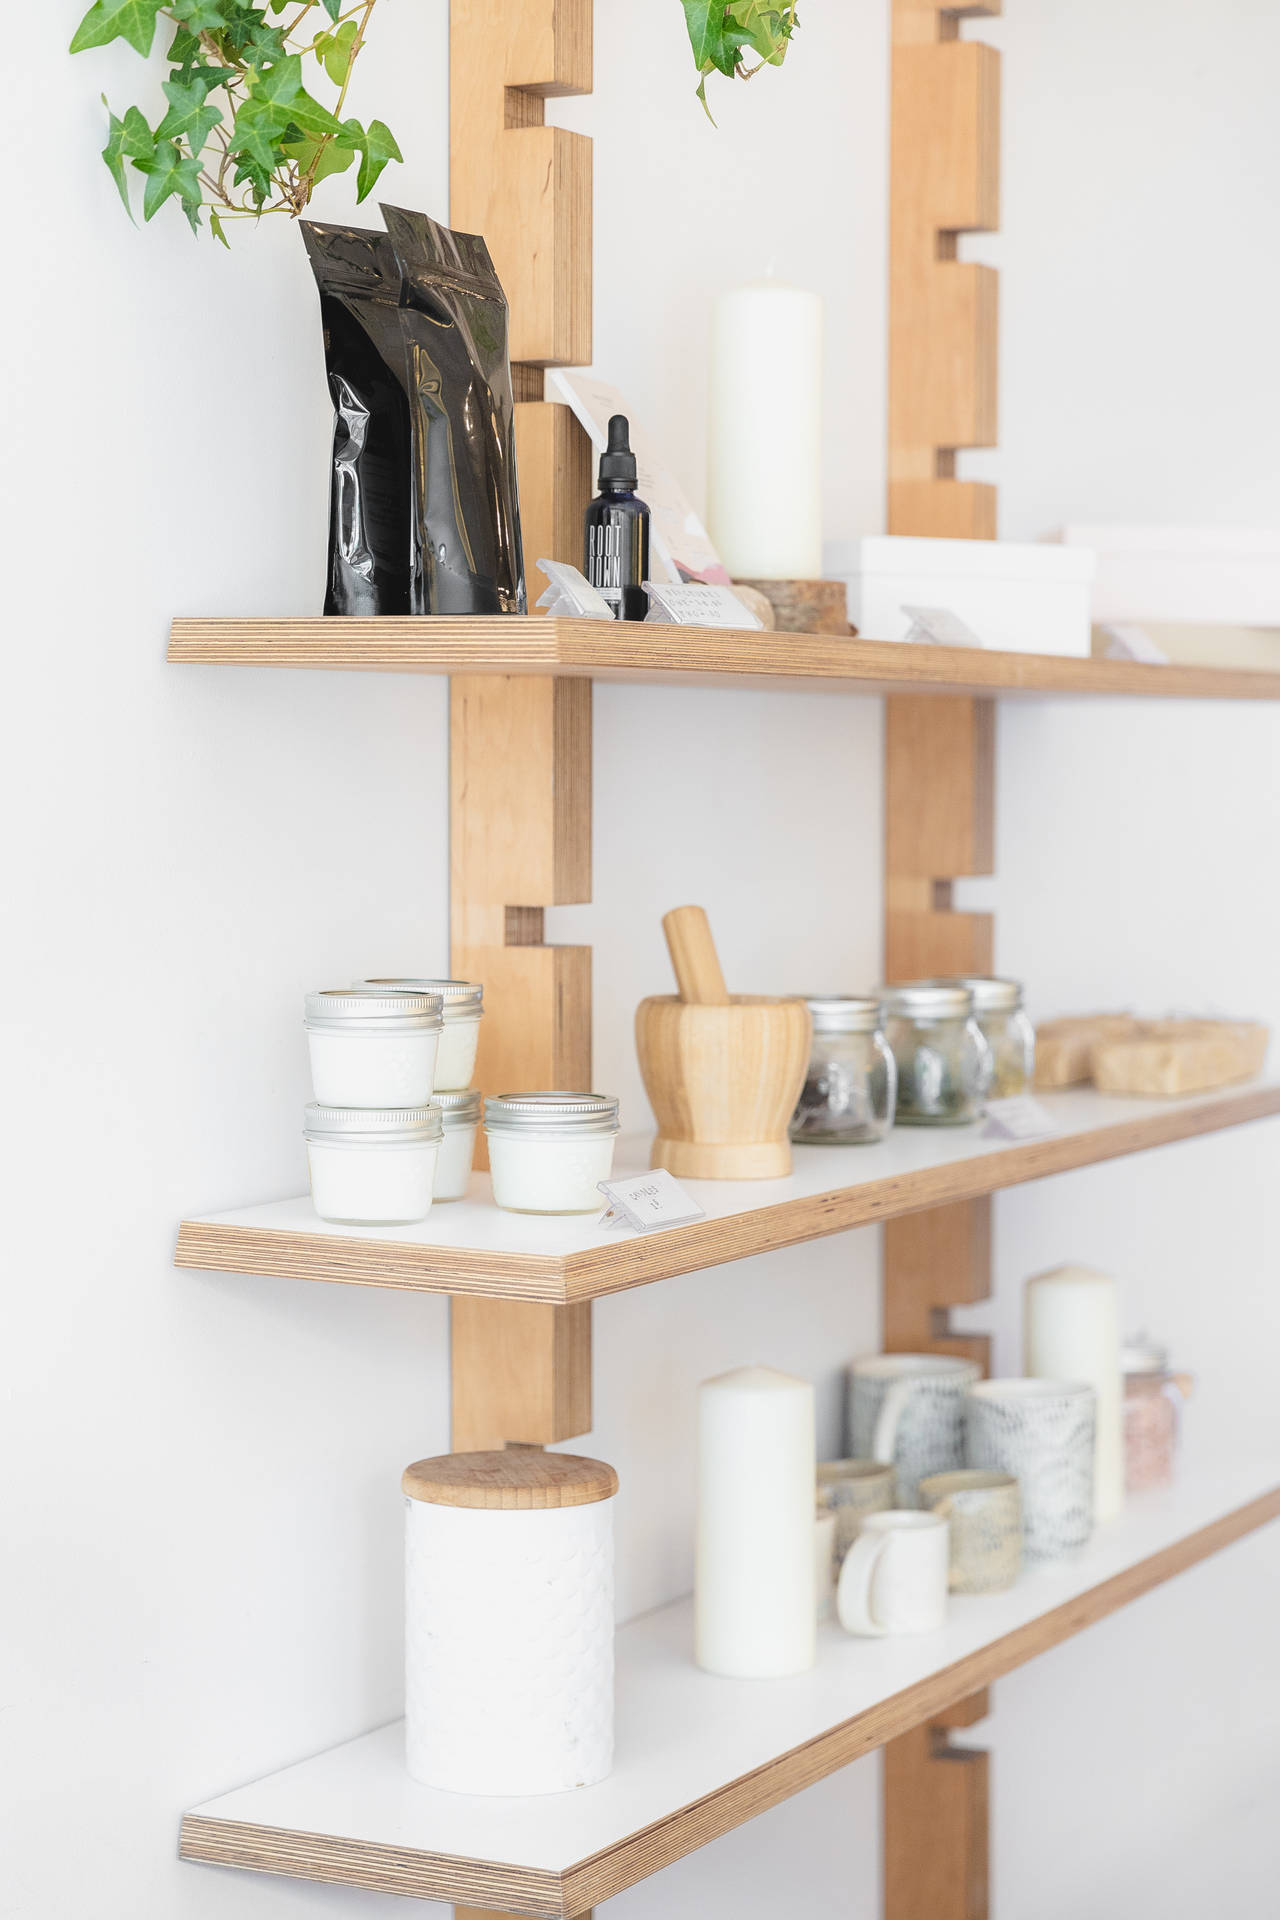 Ceramics On Shelves